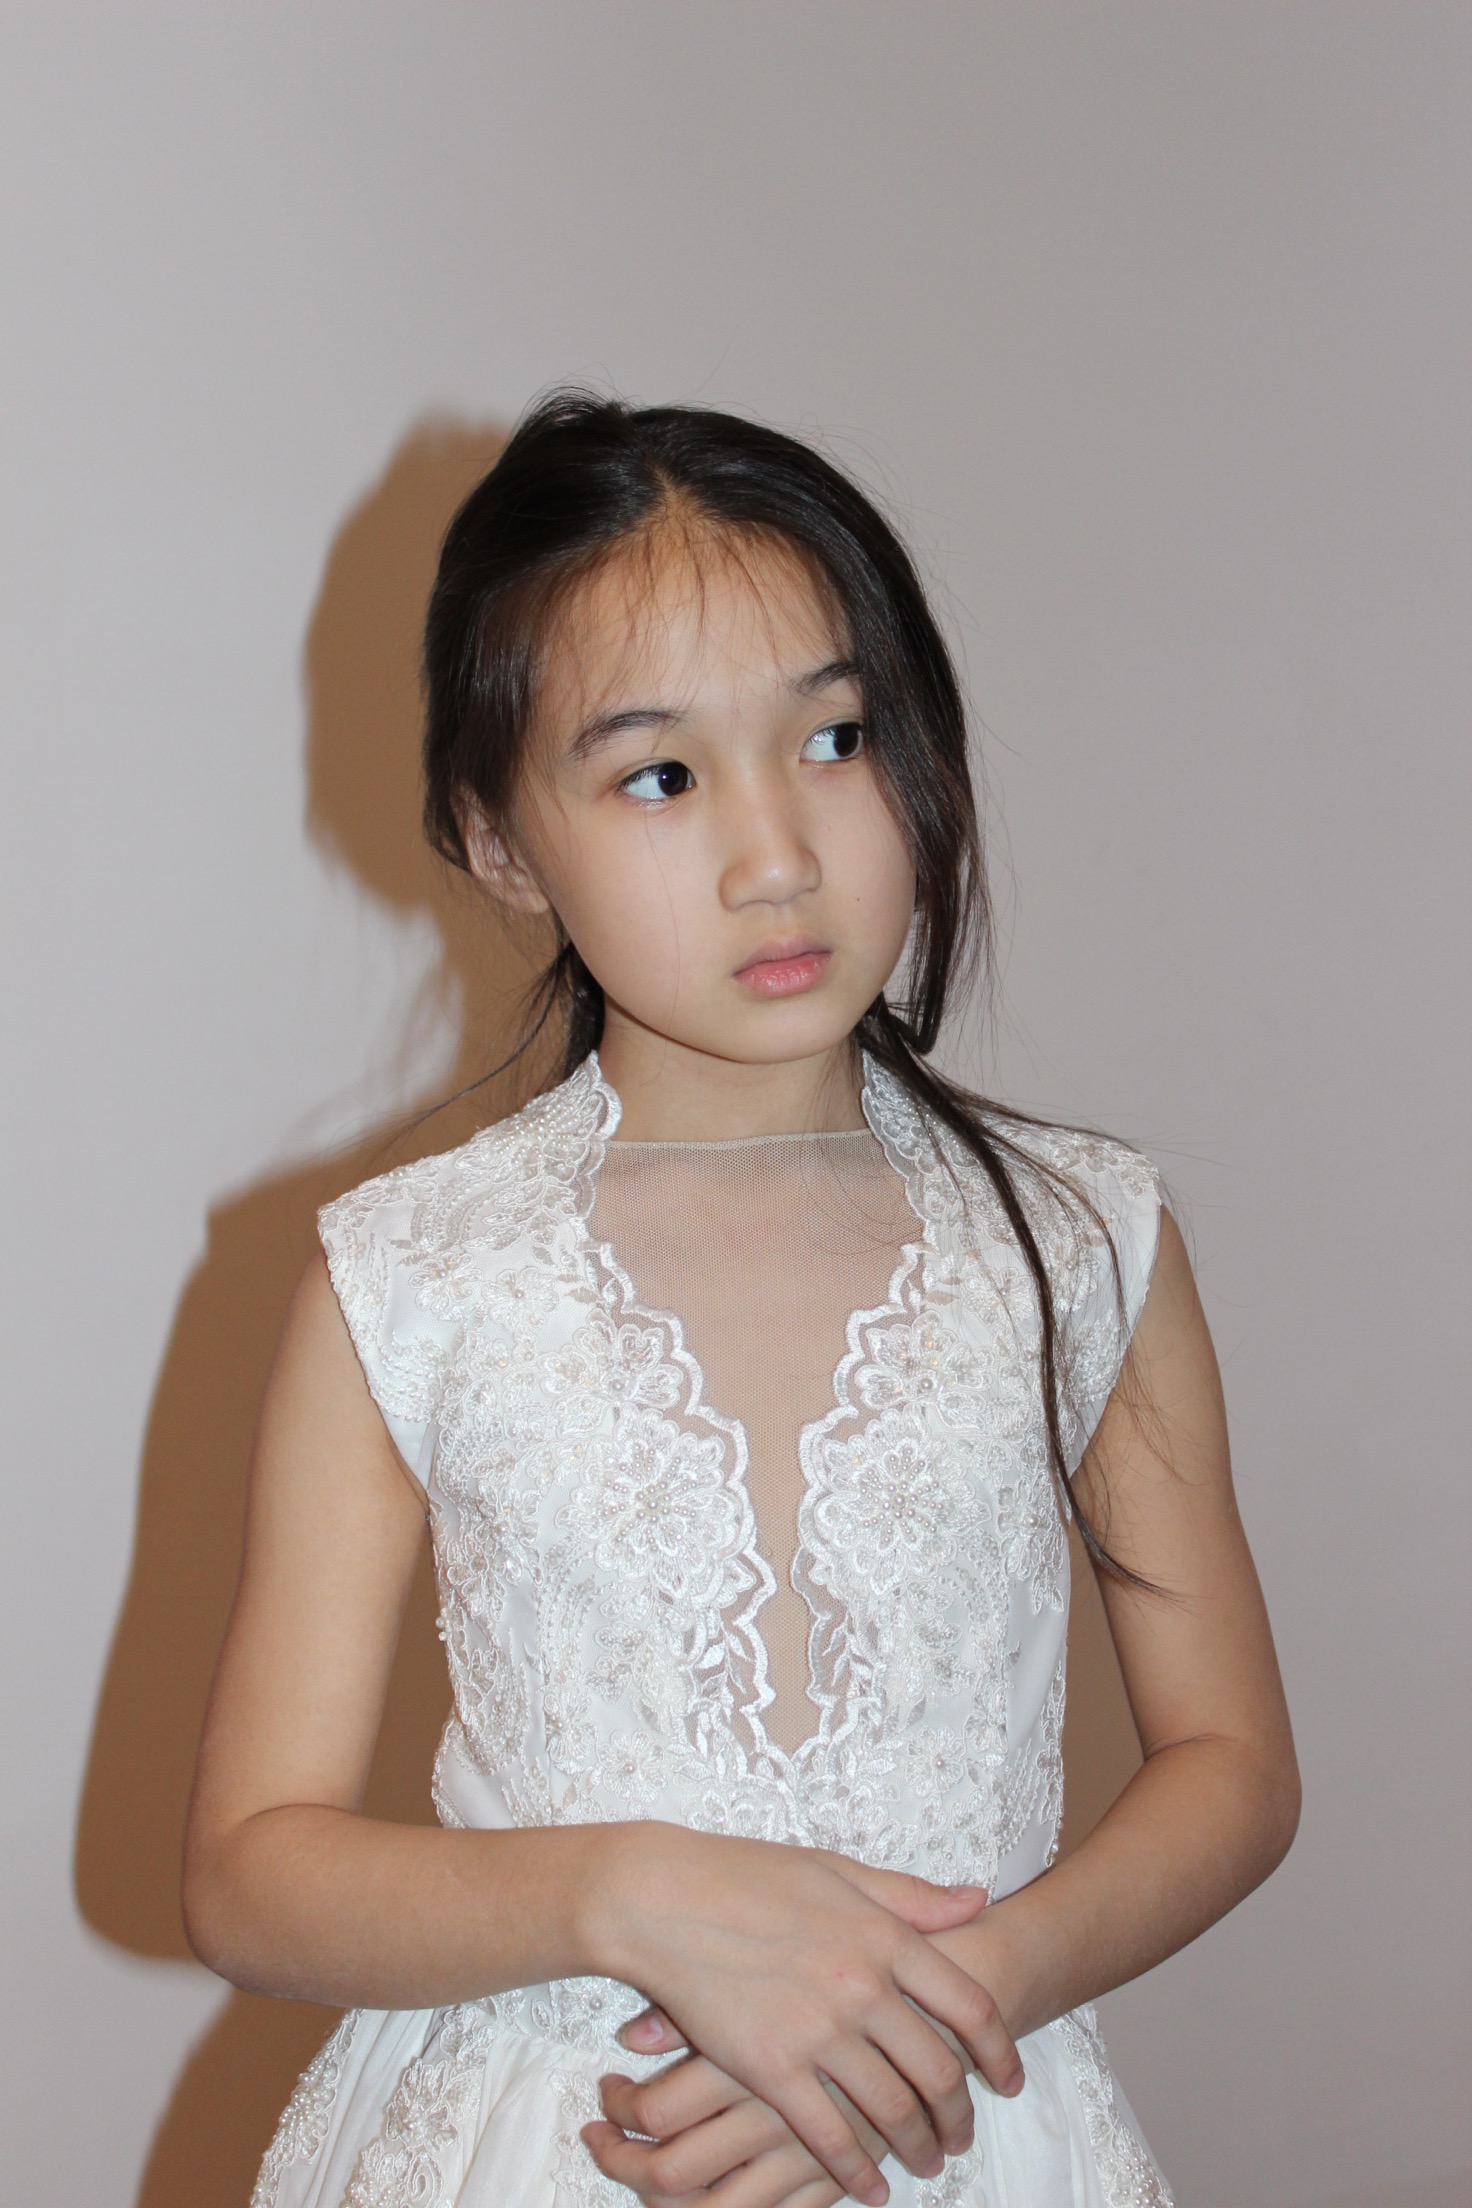 Умит Байтлеу - аккредитованная модель Международной детской недели моды